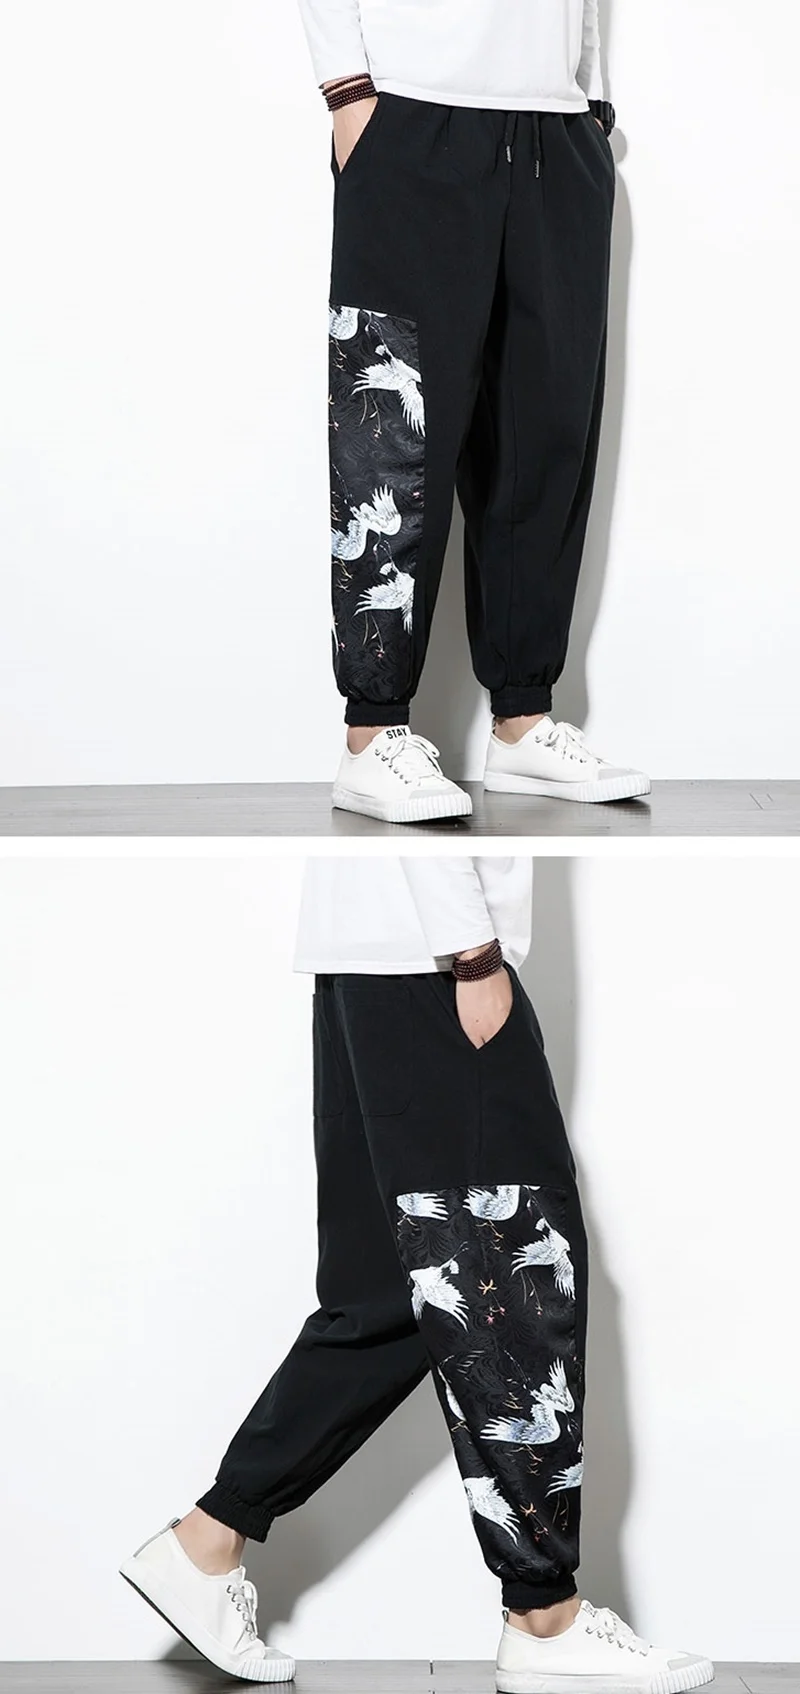 Хлопковые Мужские штаны в китайском стиле, Японская уличная одежда для бега, Мужские штаны в стиле хип-хоп, мужские брюки, весна, KK3261